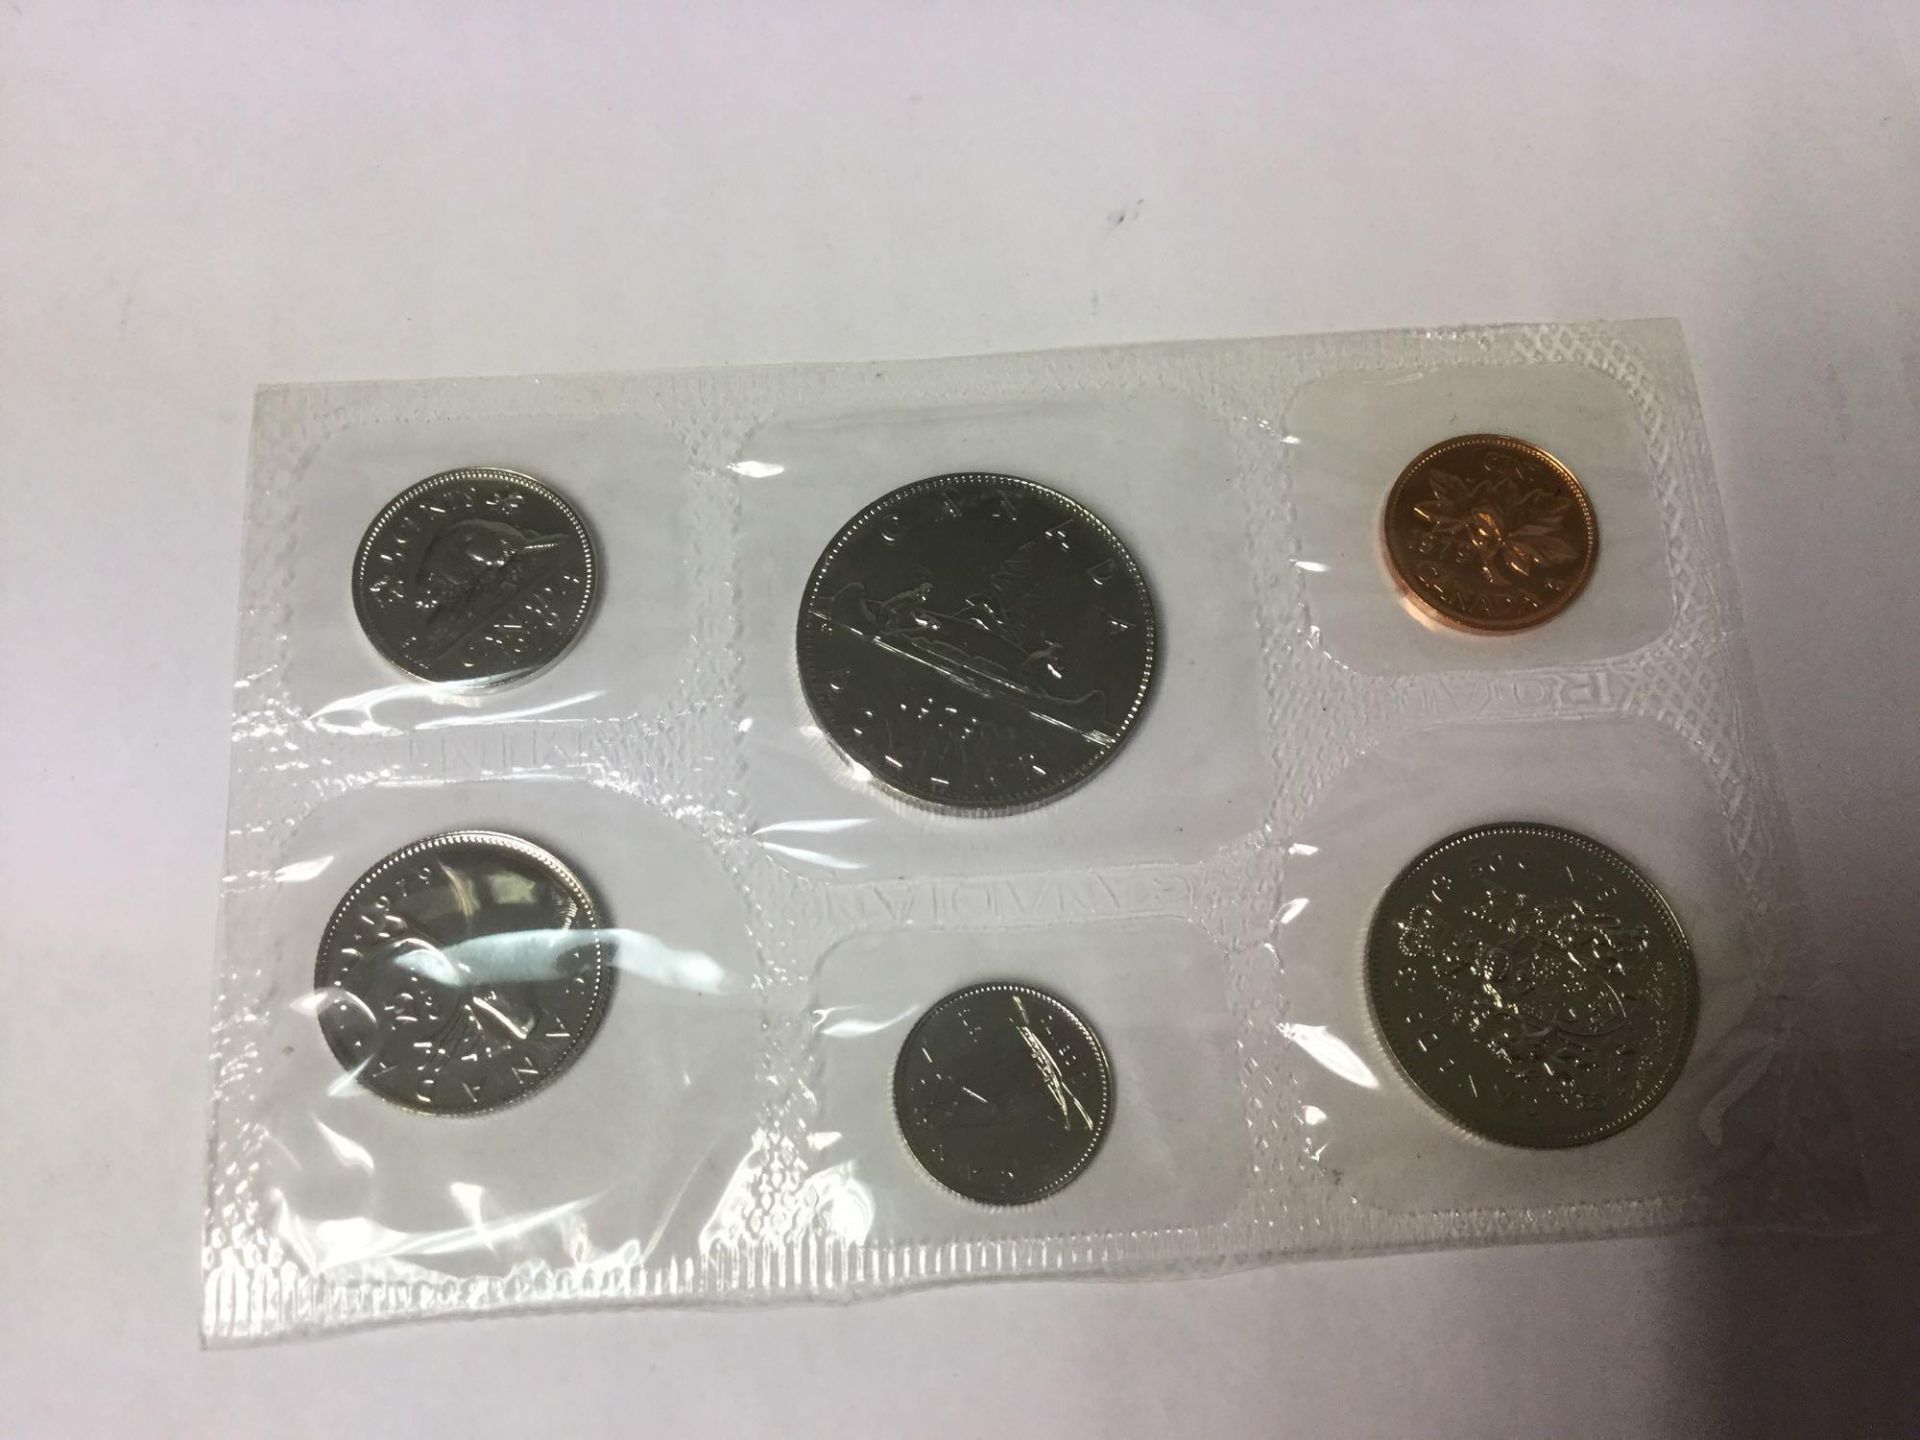 Royal Canadian Mint- 1979 Specimen set with Envelope - Image 2 of 3